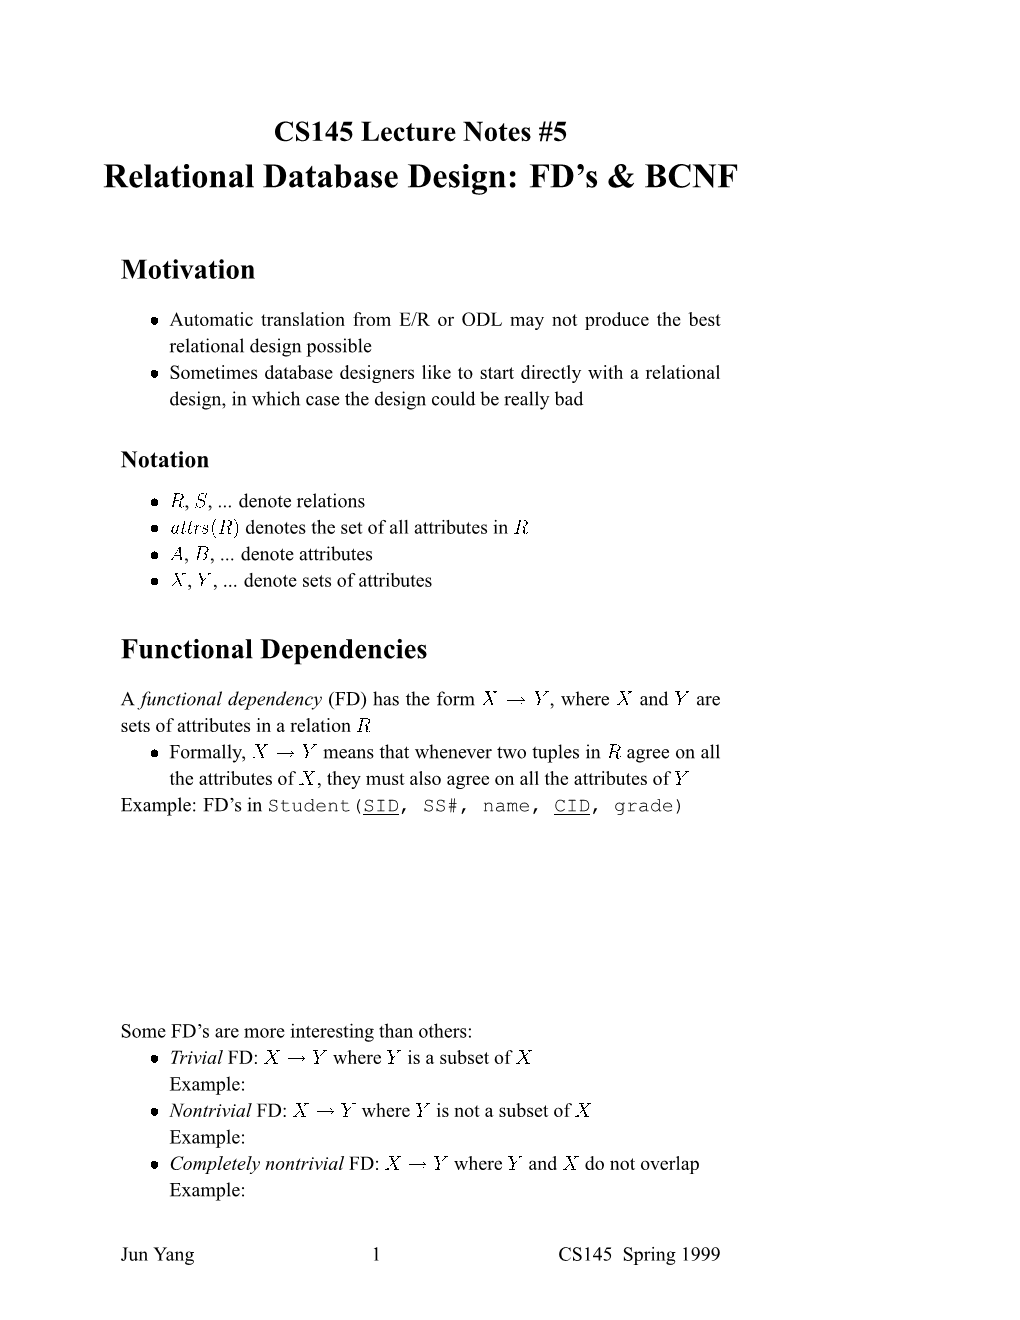 Relational Database Design: FD's & BCNF